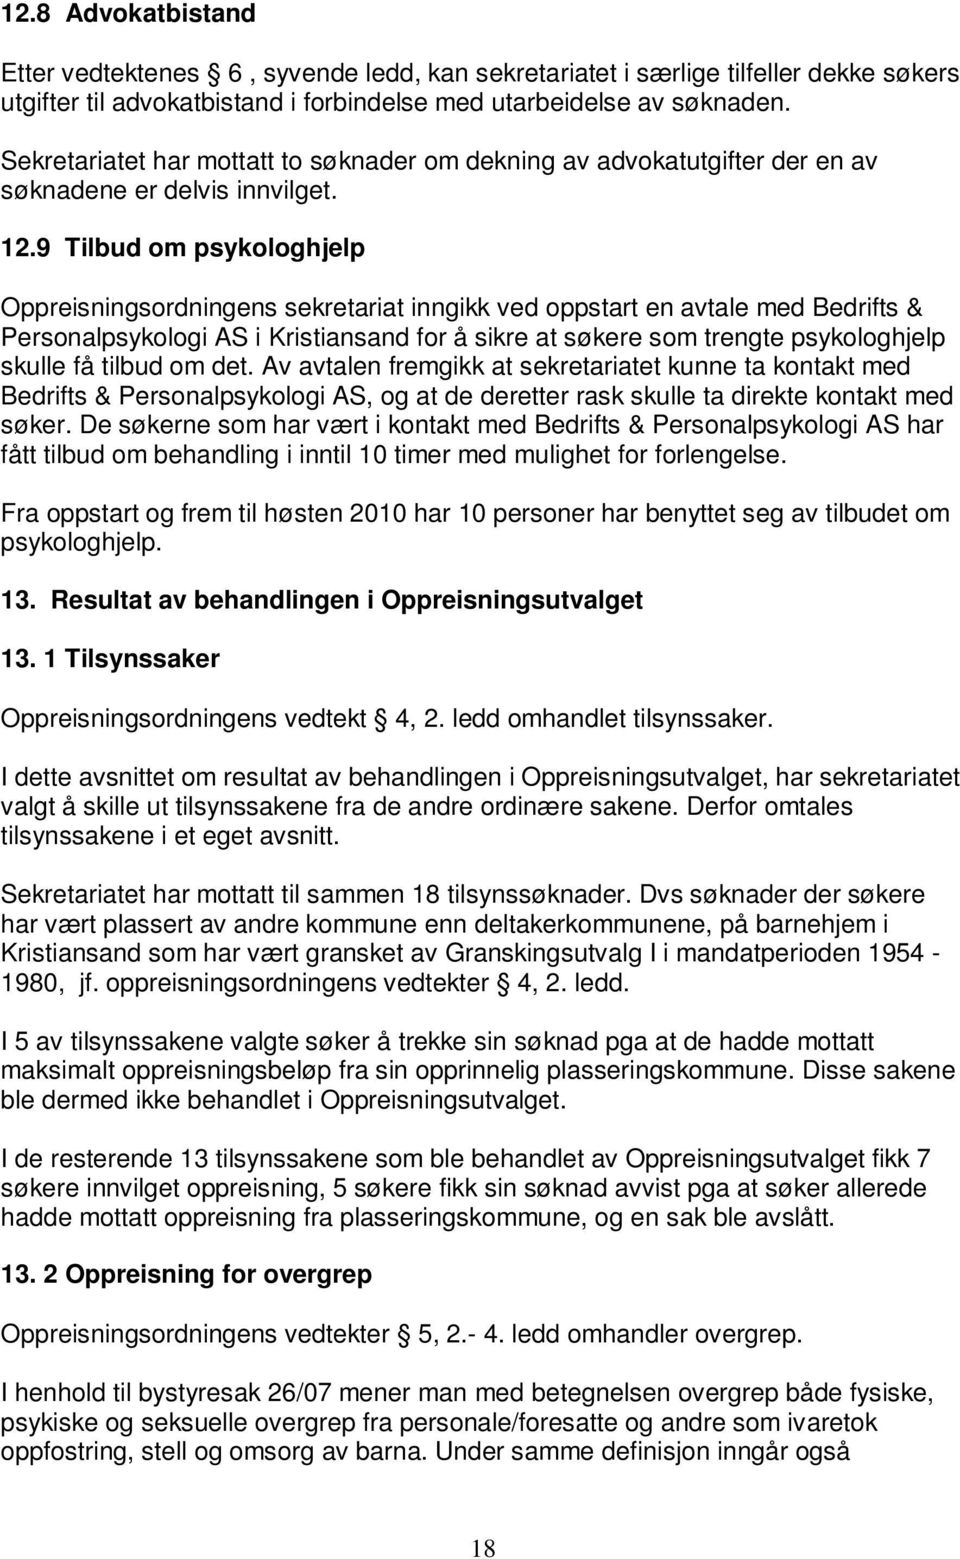 9 Tilbud om psykologhjelp Oppreisningsordningens sekretariat inngikk ved oppstart en avtale med Bedrifts & Personalpsykologi AS i Kristiansand for å sikre at søkere som trengte psykologhjelp skulle